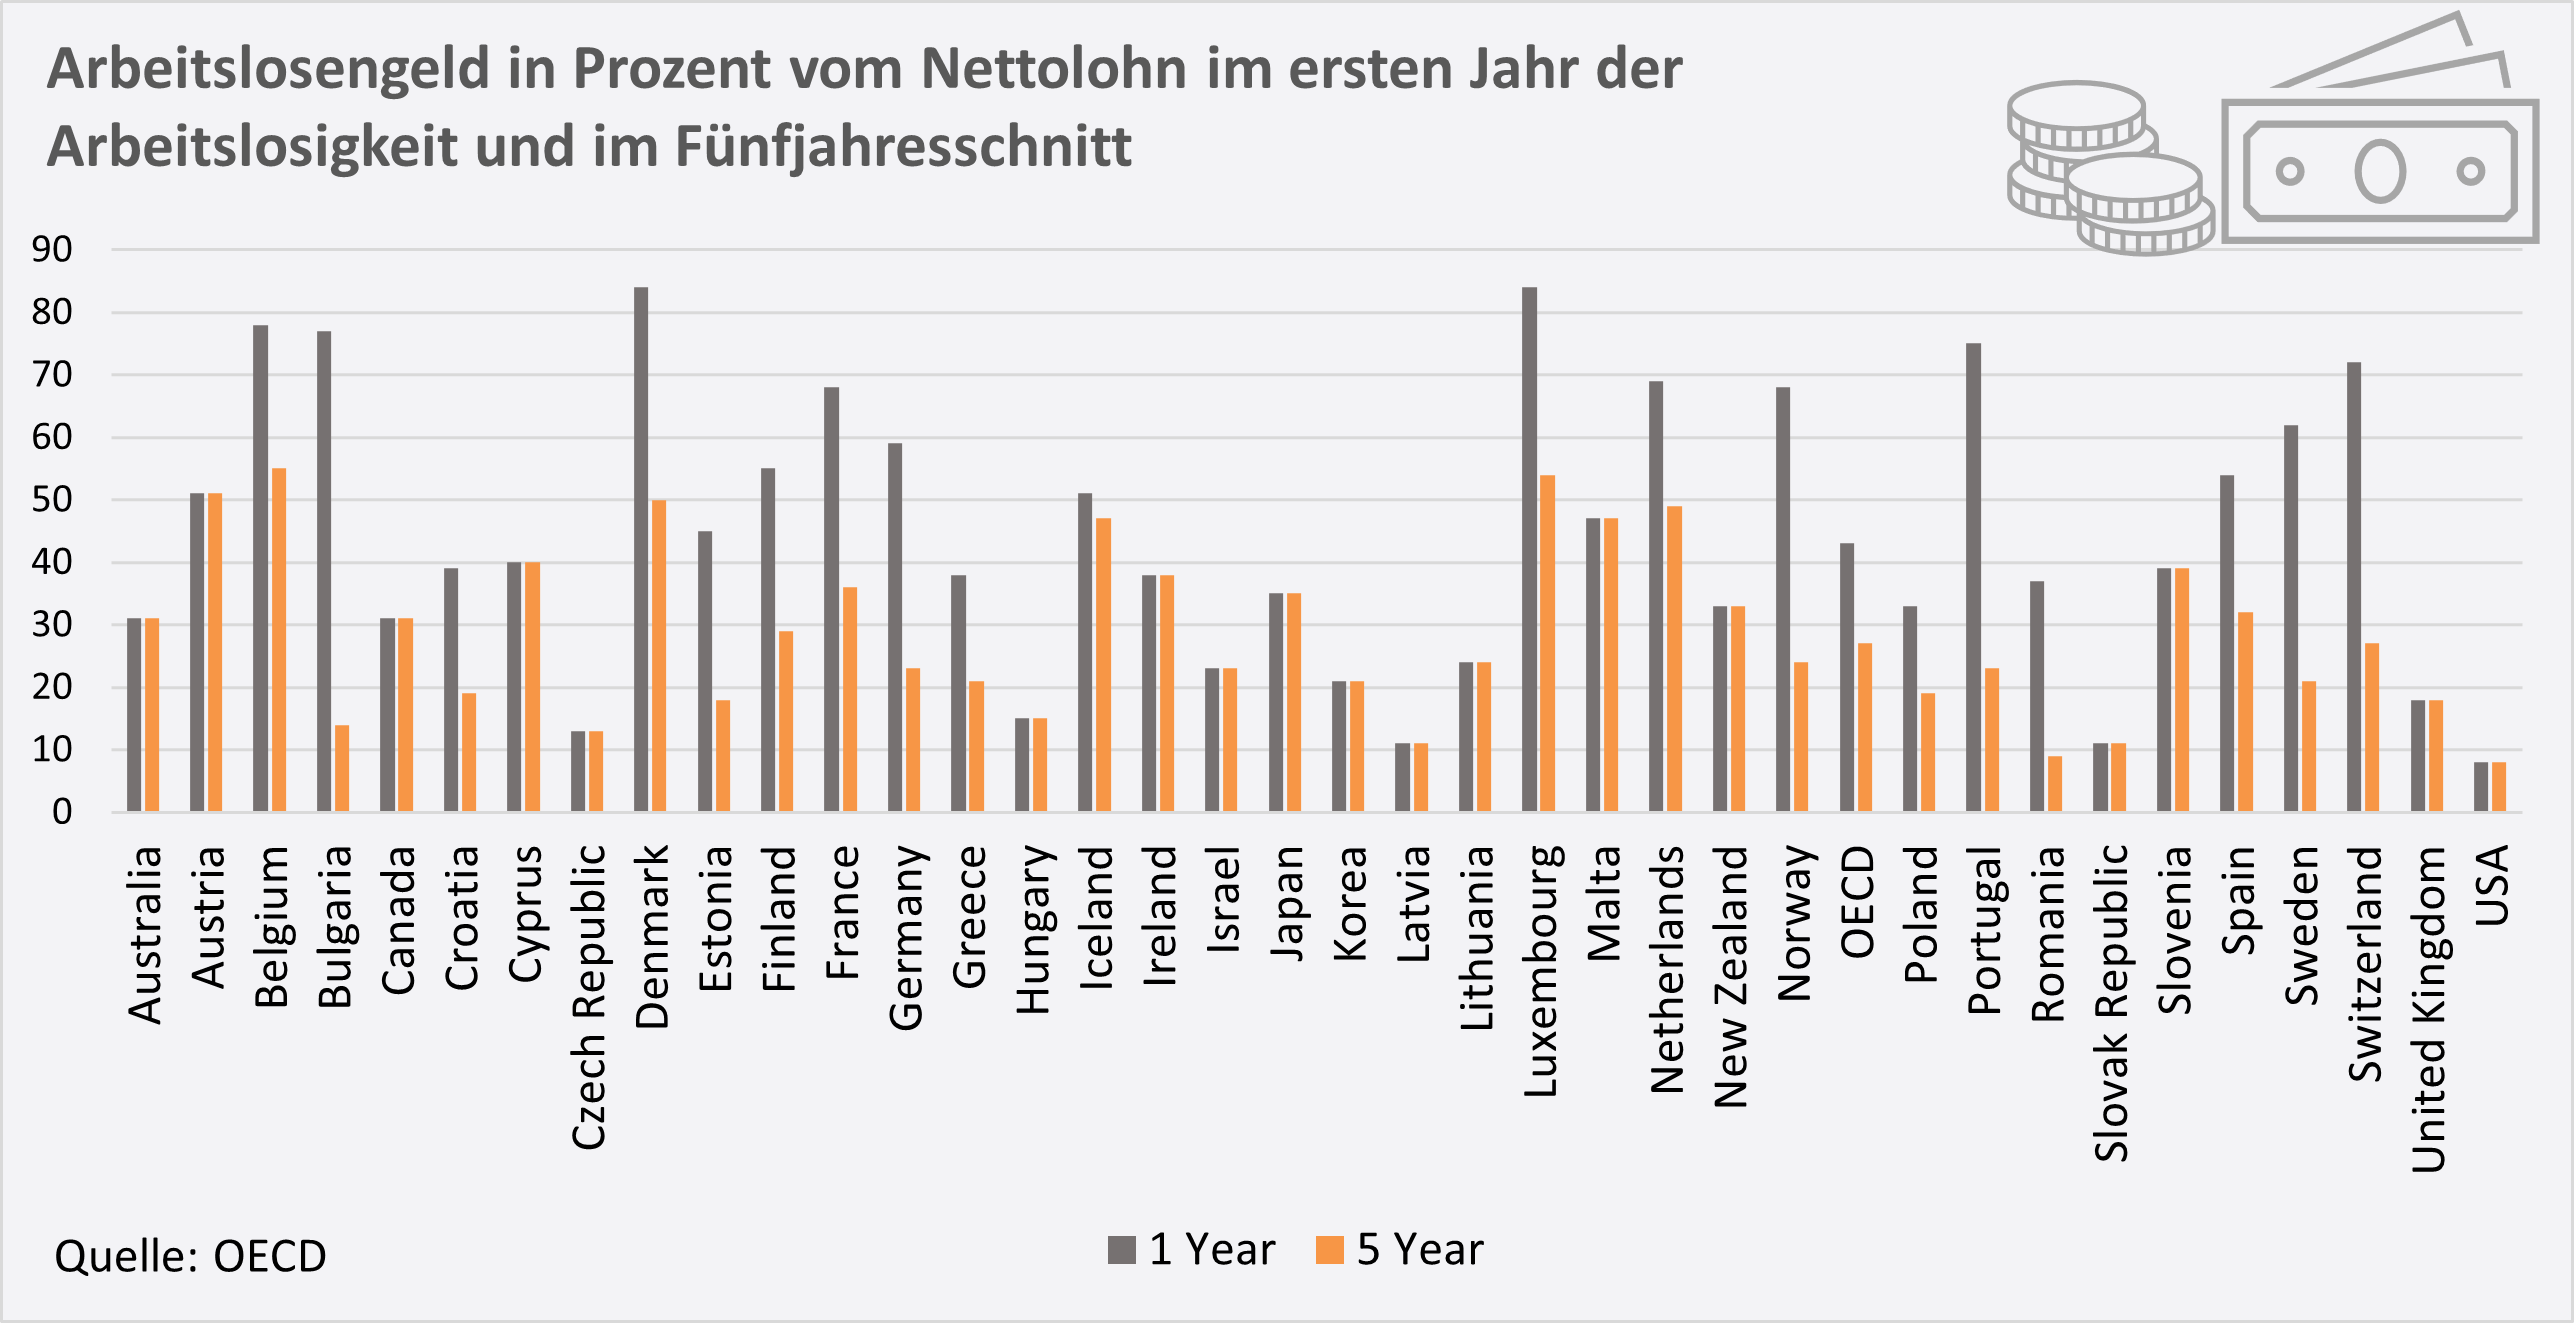 Arbeitslosengeld in Prozent vom Nettolohn im ersten Jahr der Arbeitslosigkeit und im Fünfjahresschnitt